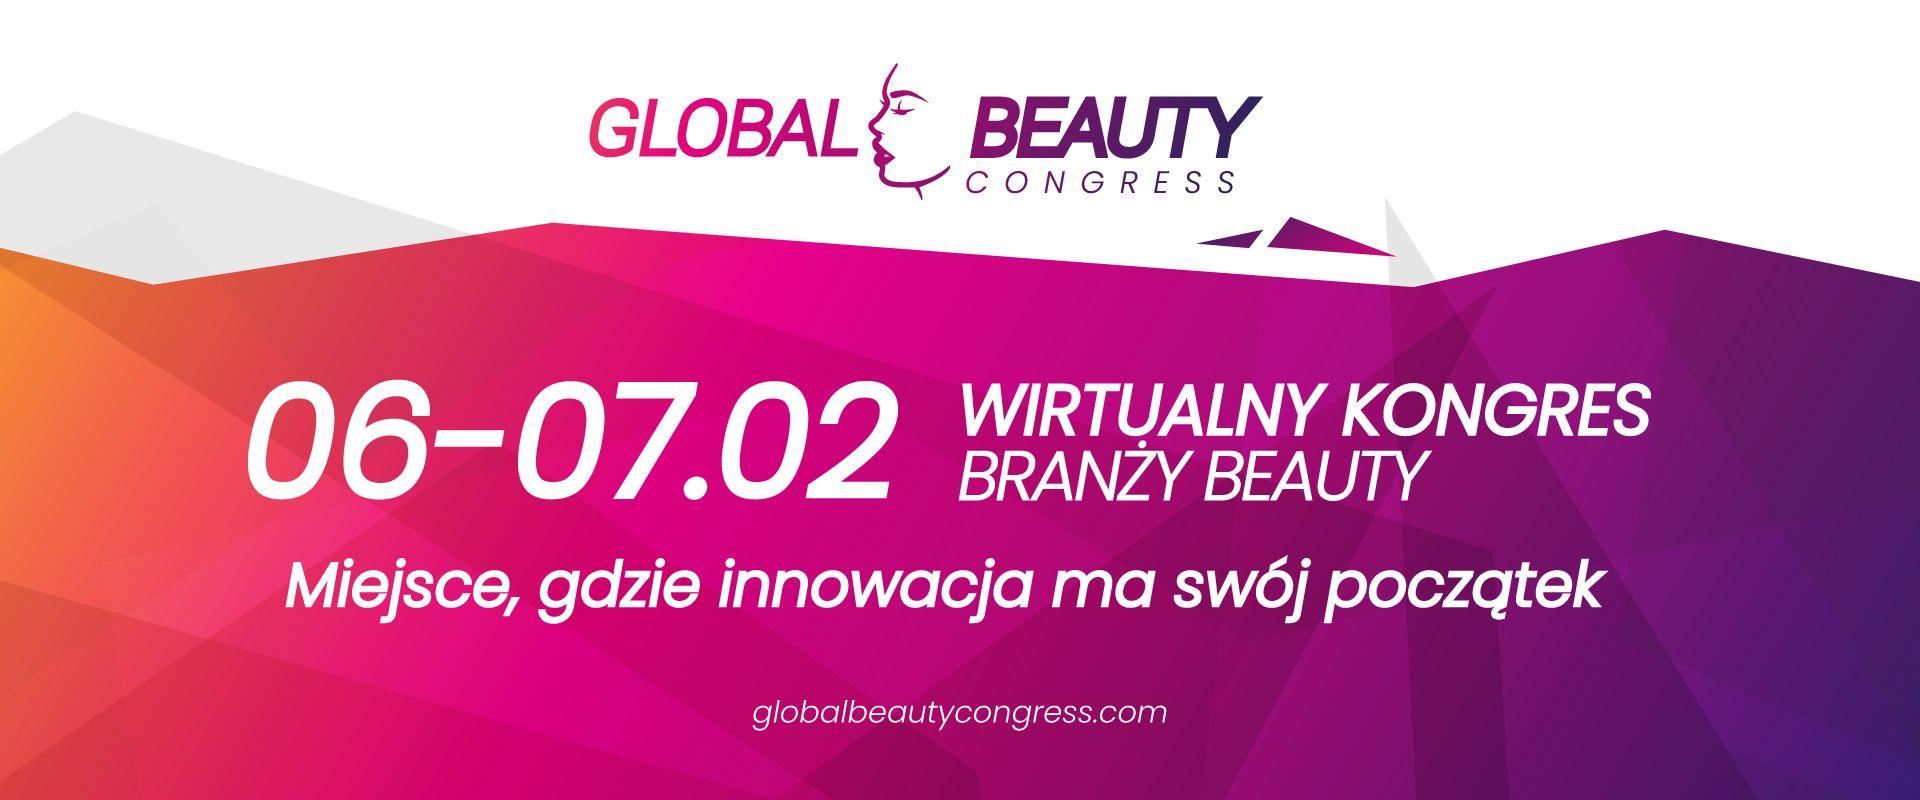 Global Beauty Congress - poznaj najważniejsze aspekty kosmetologii w roku 2021